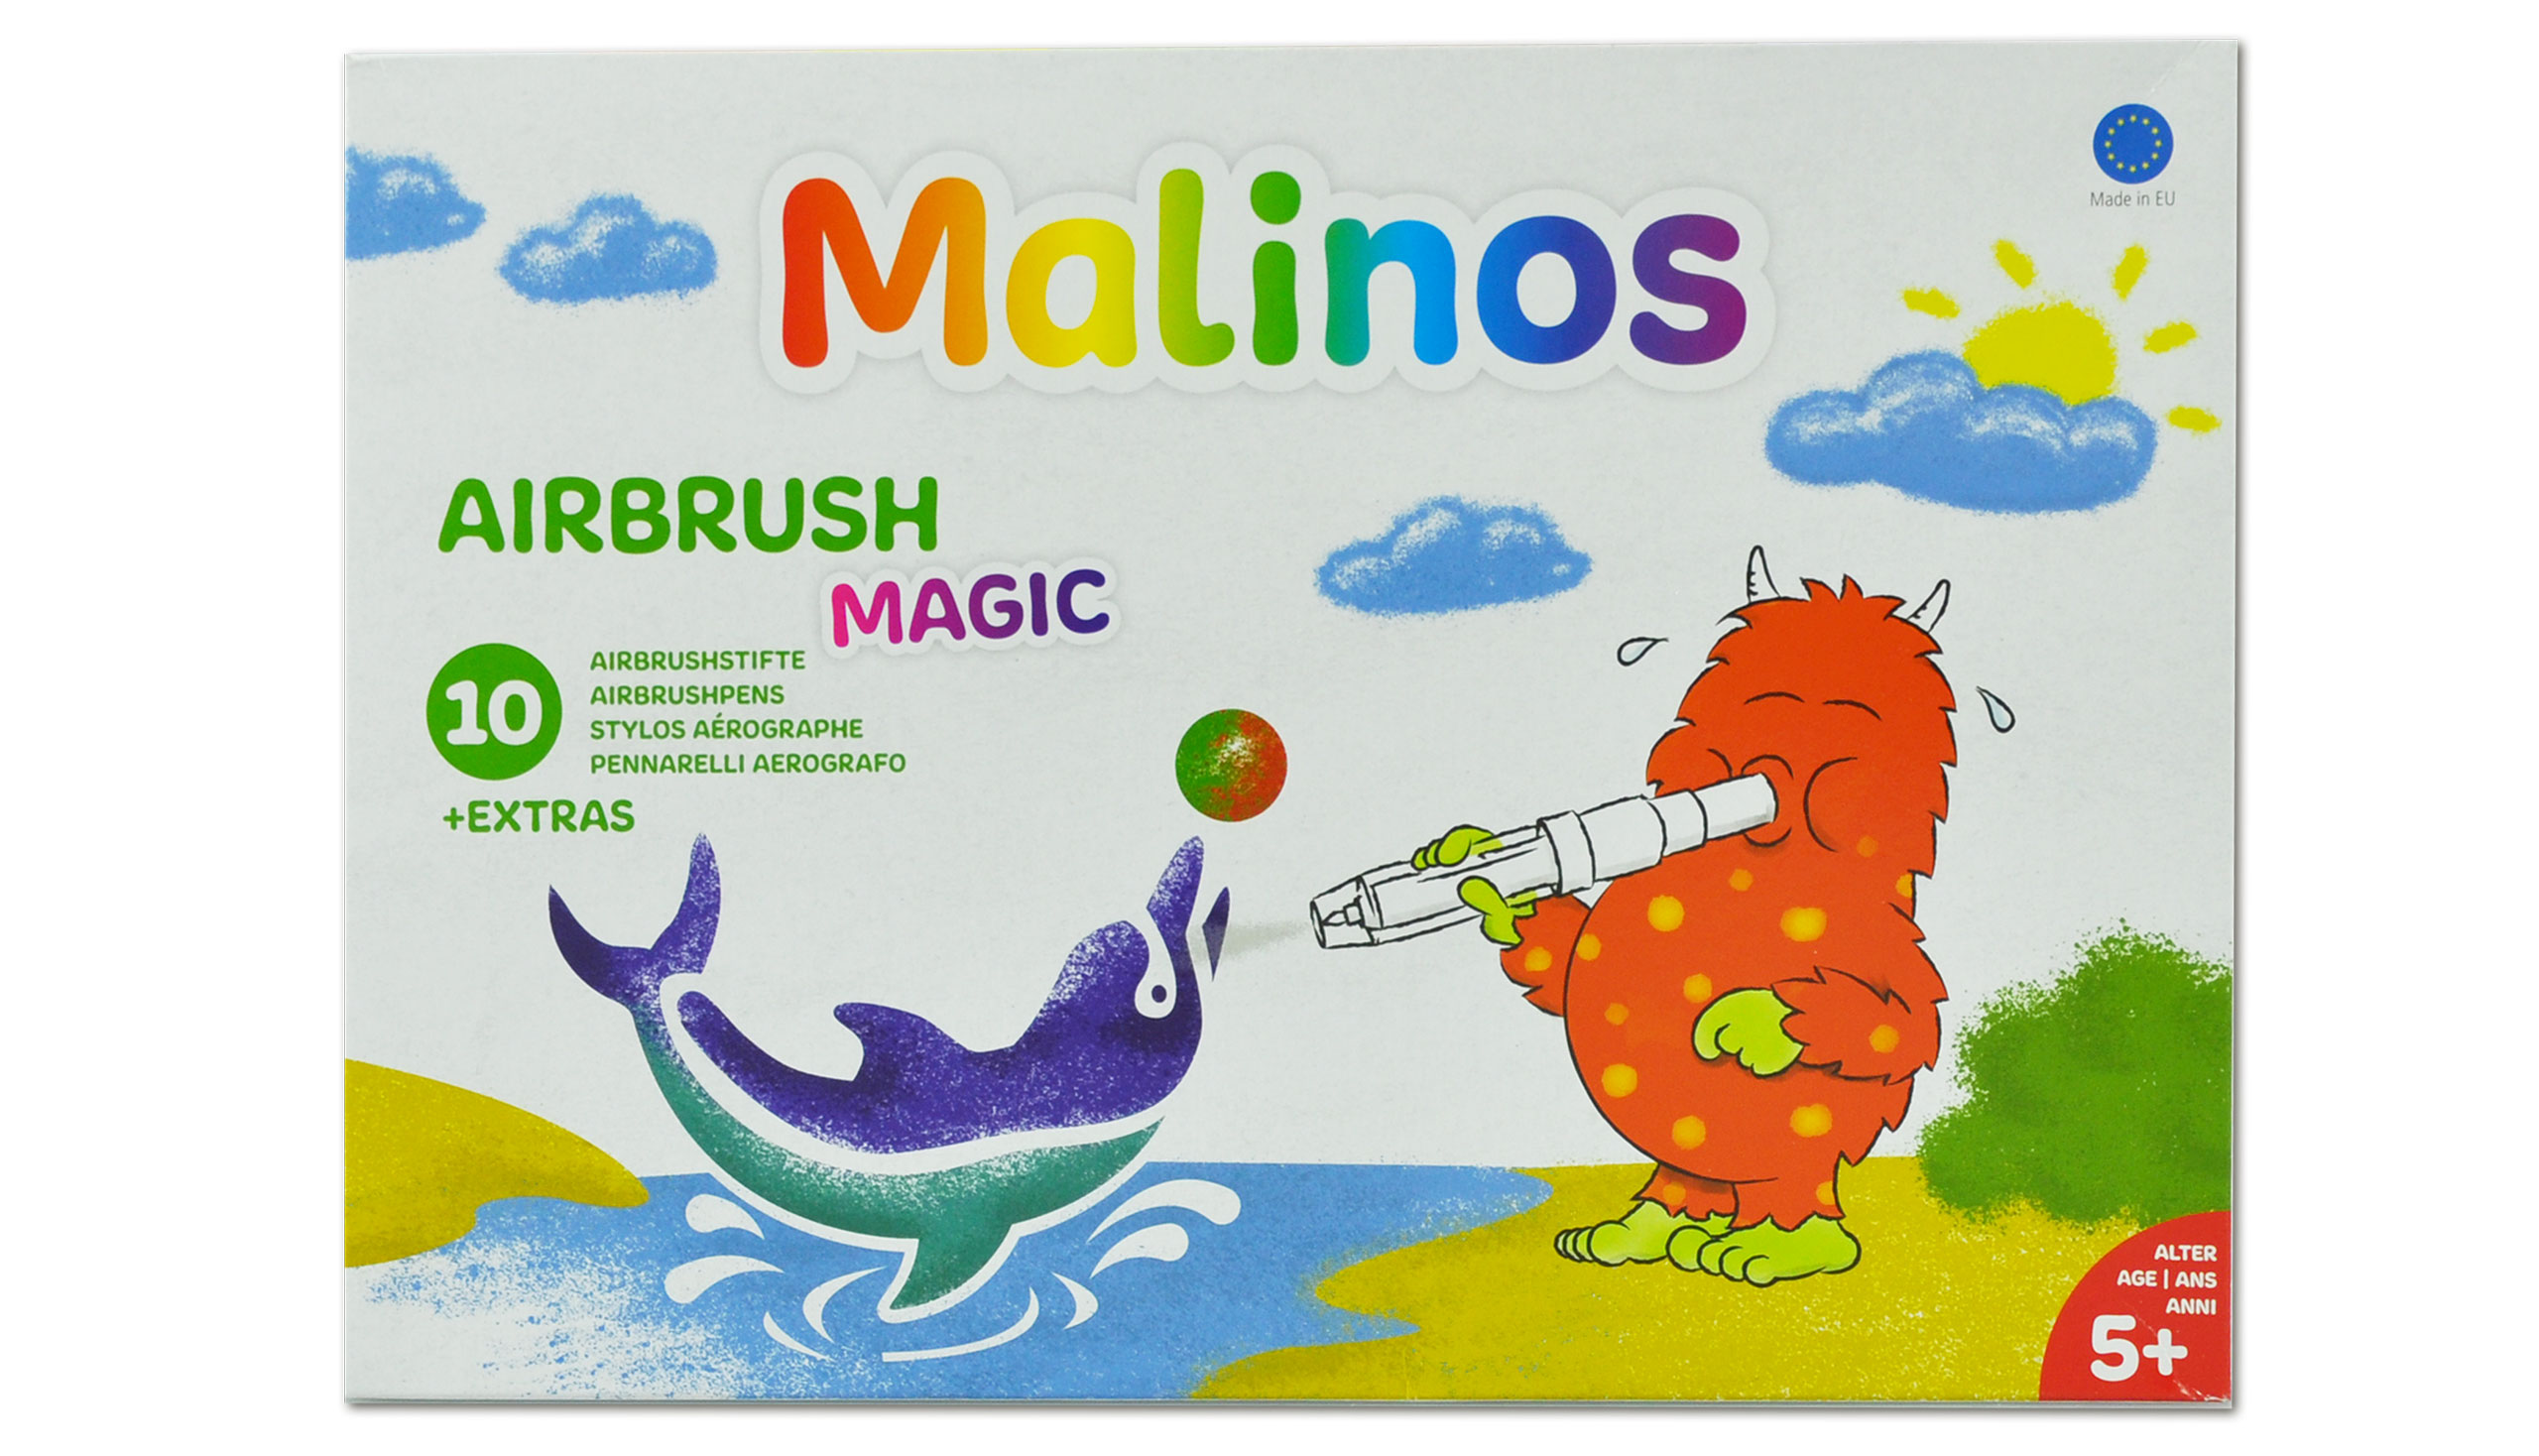 AIRBRUSH MAGIC 10+1 MALINOS